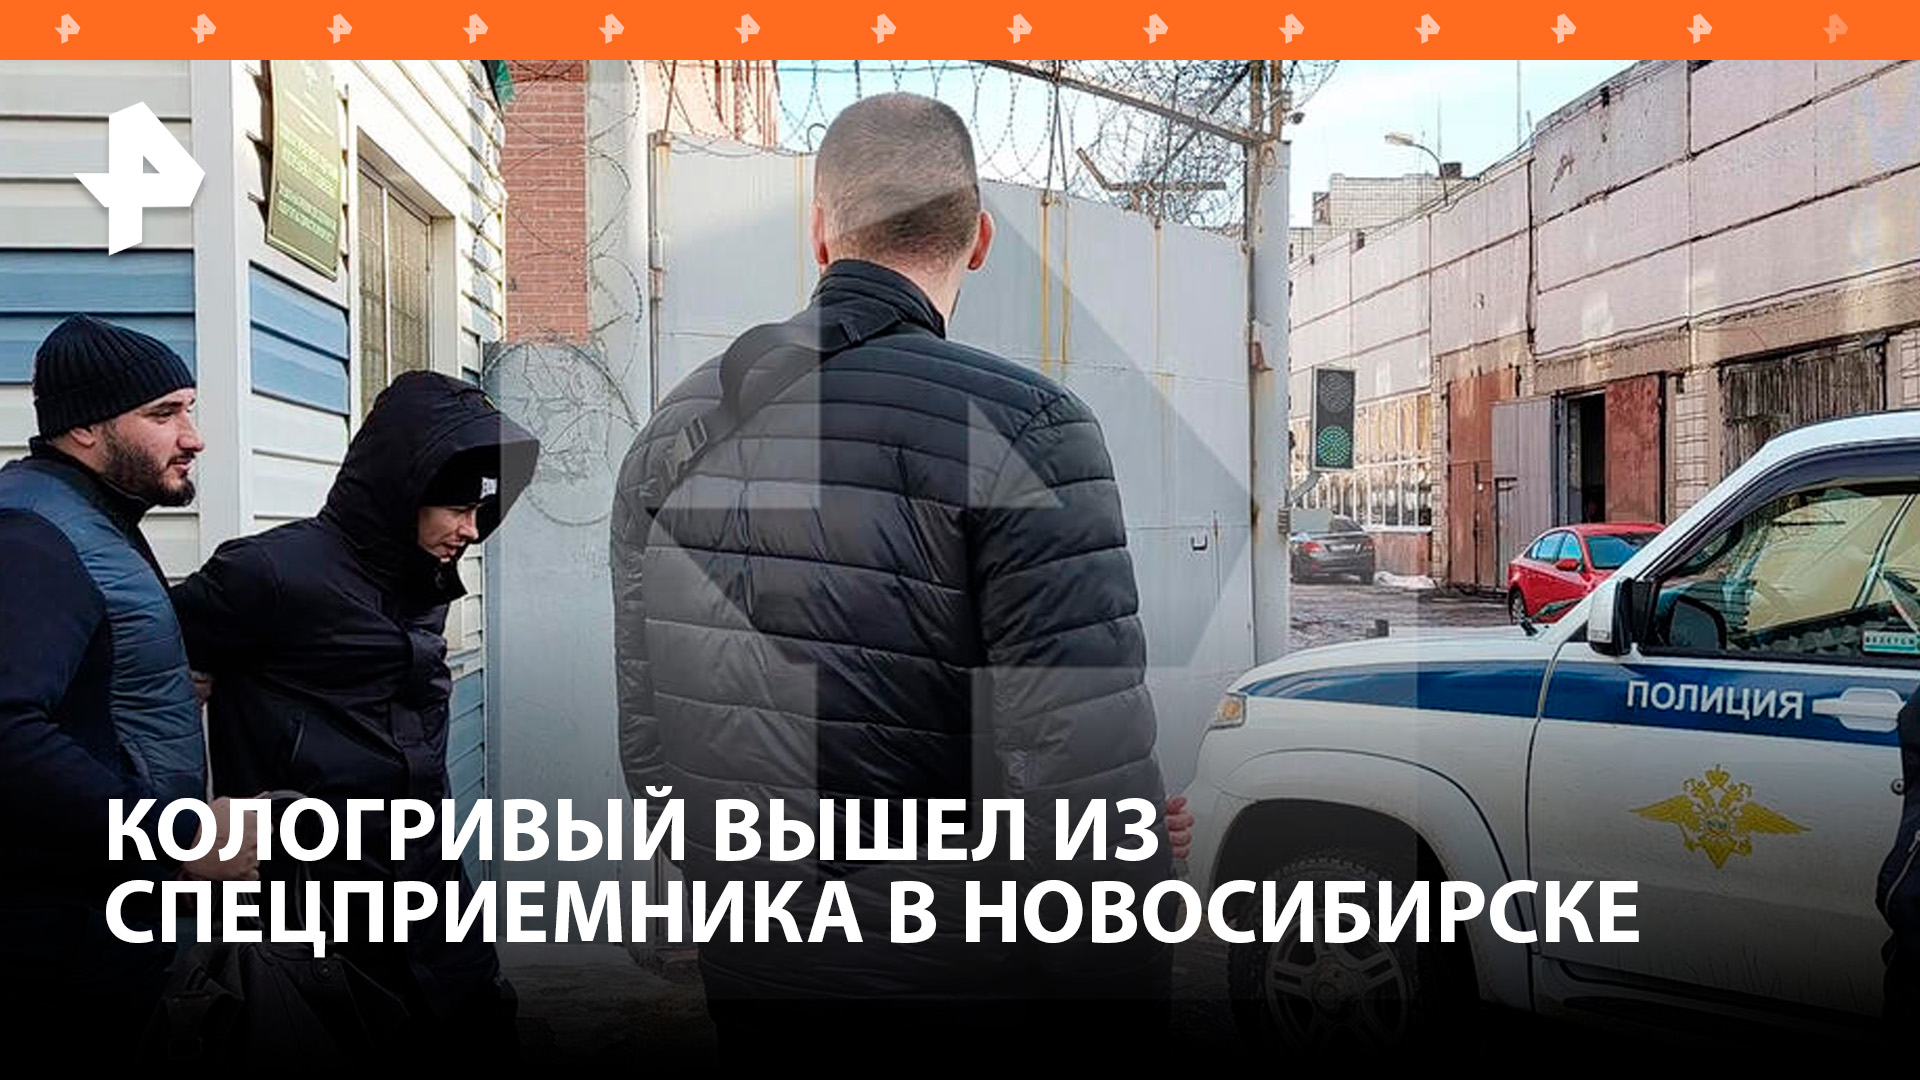 Кологривый вышел из спецприемника в Новосибирске / РЕН Новости